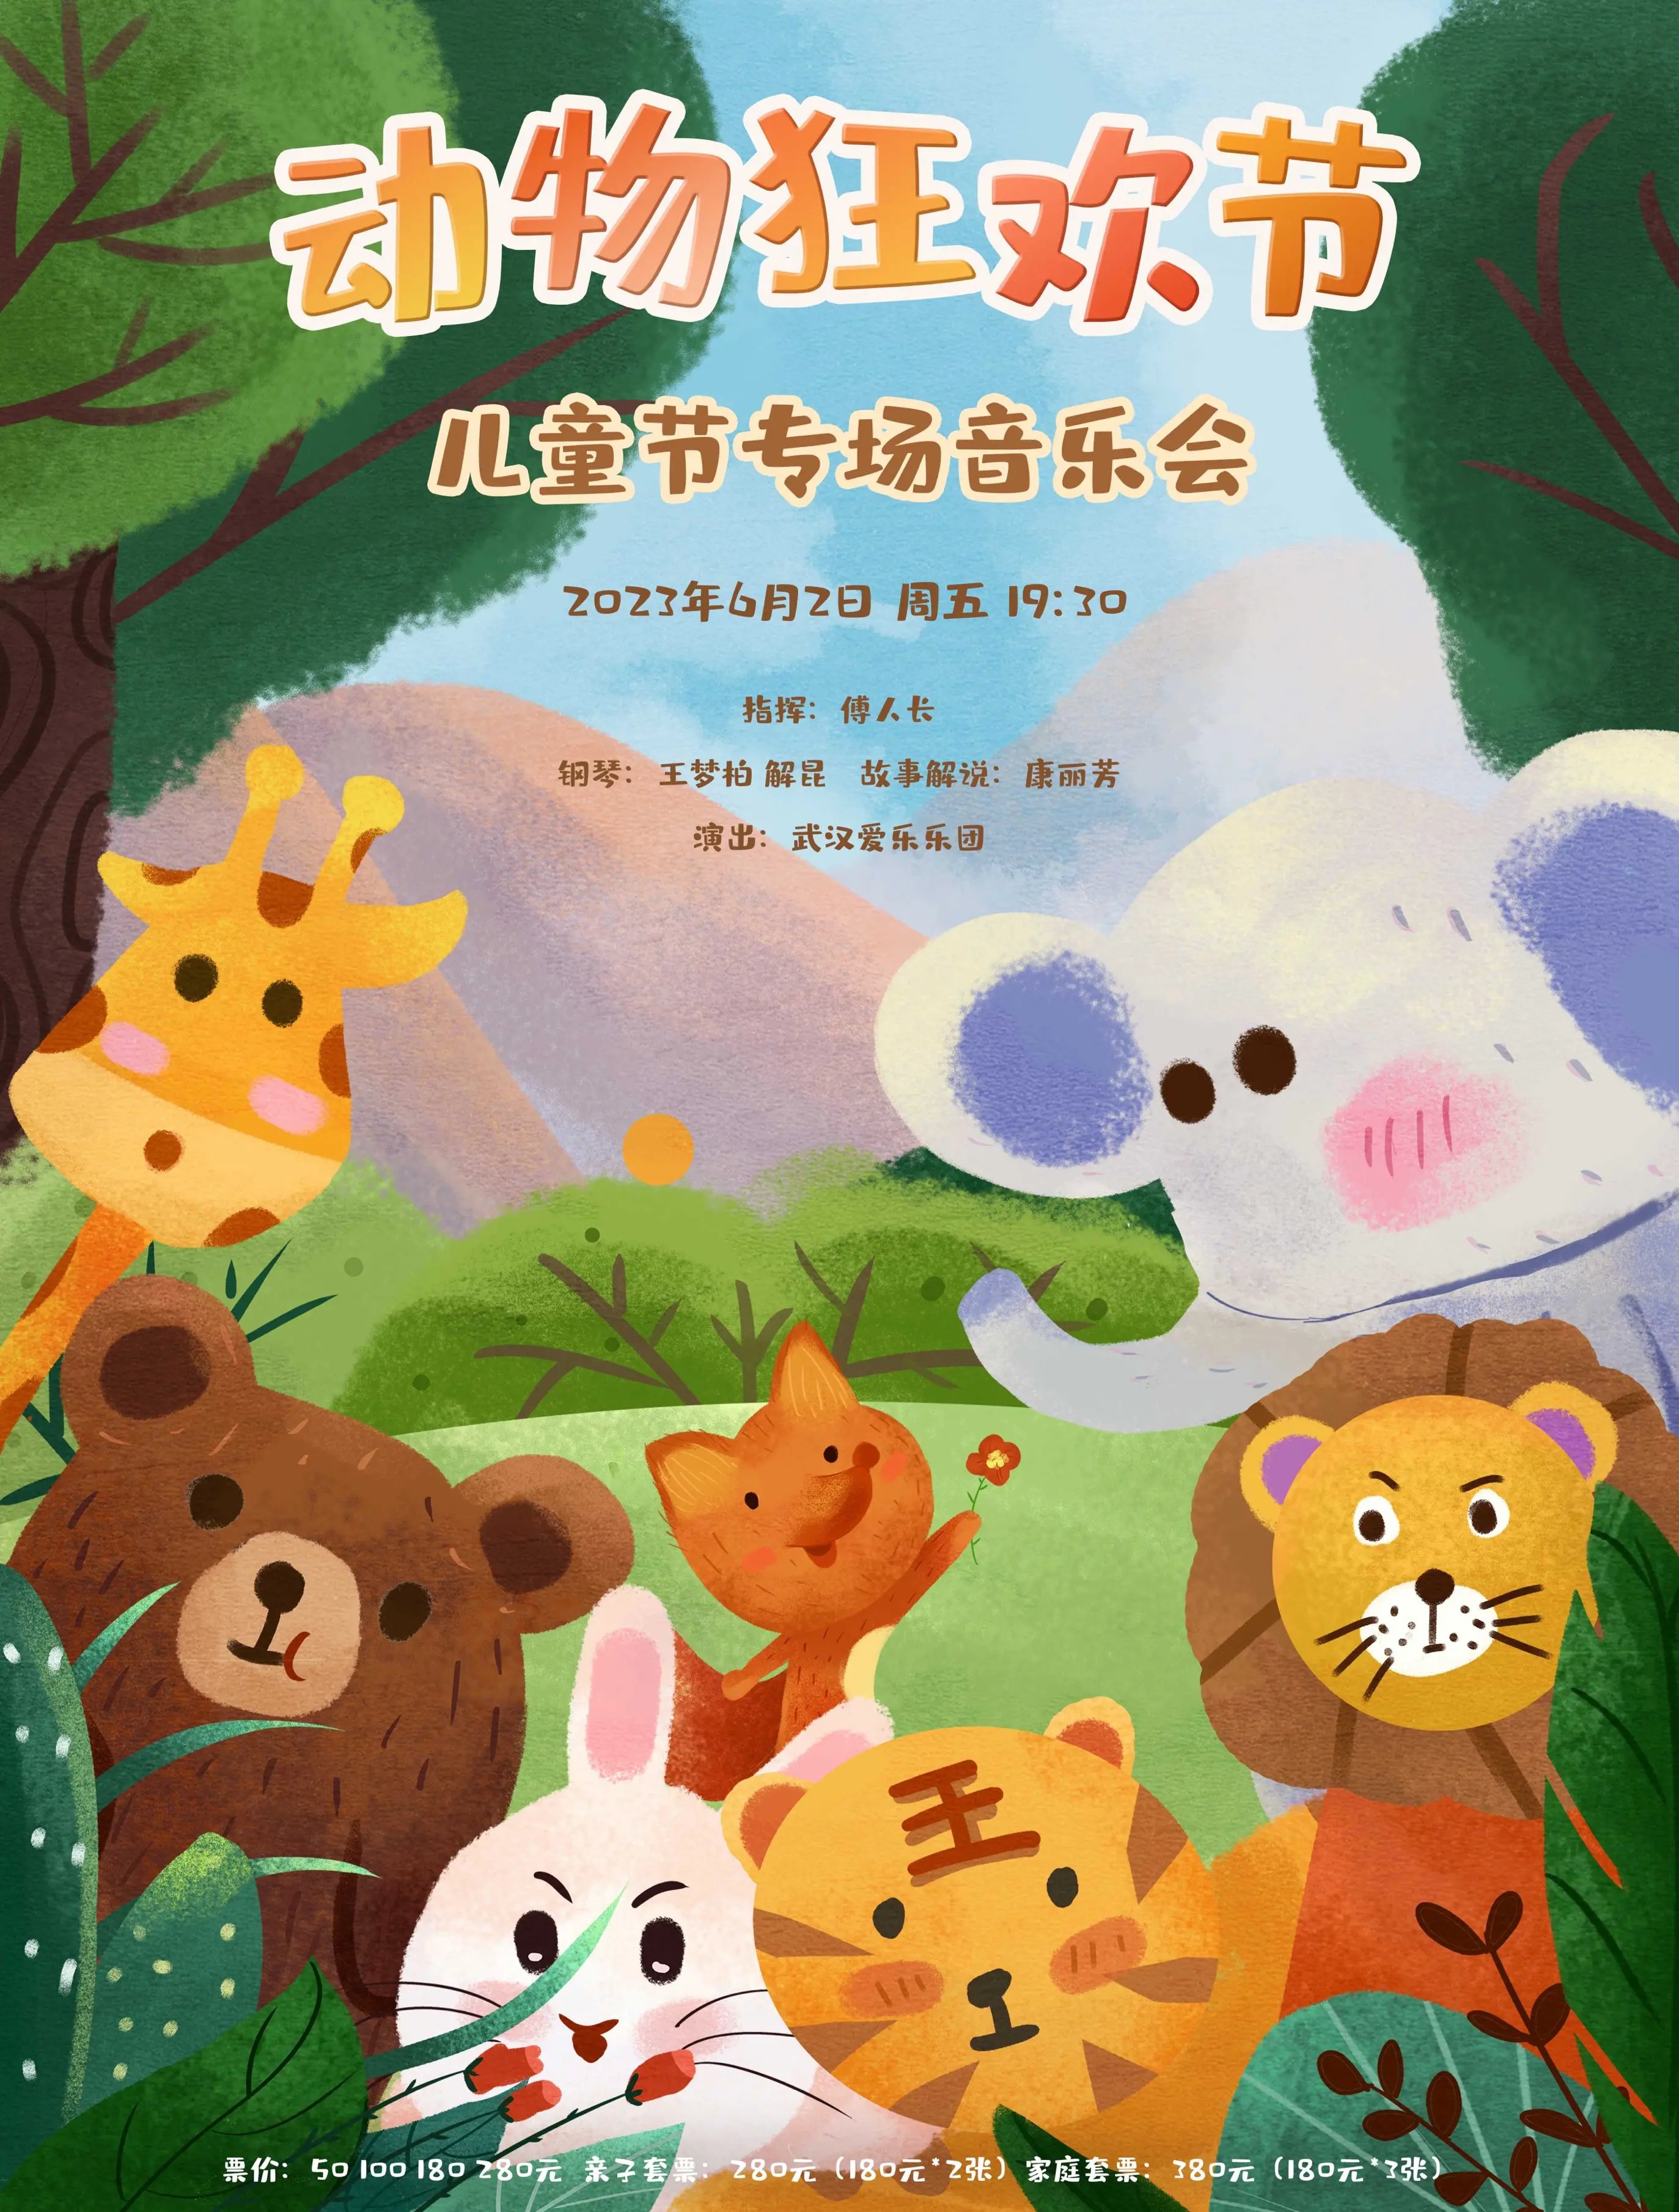 【武汉】动物狂欢节—儿童节专场音乐会